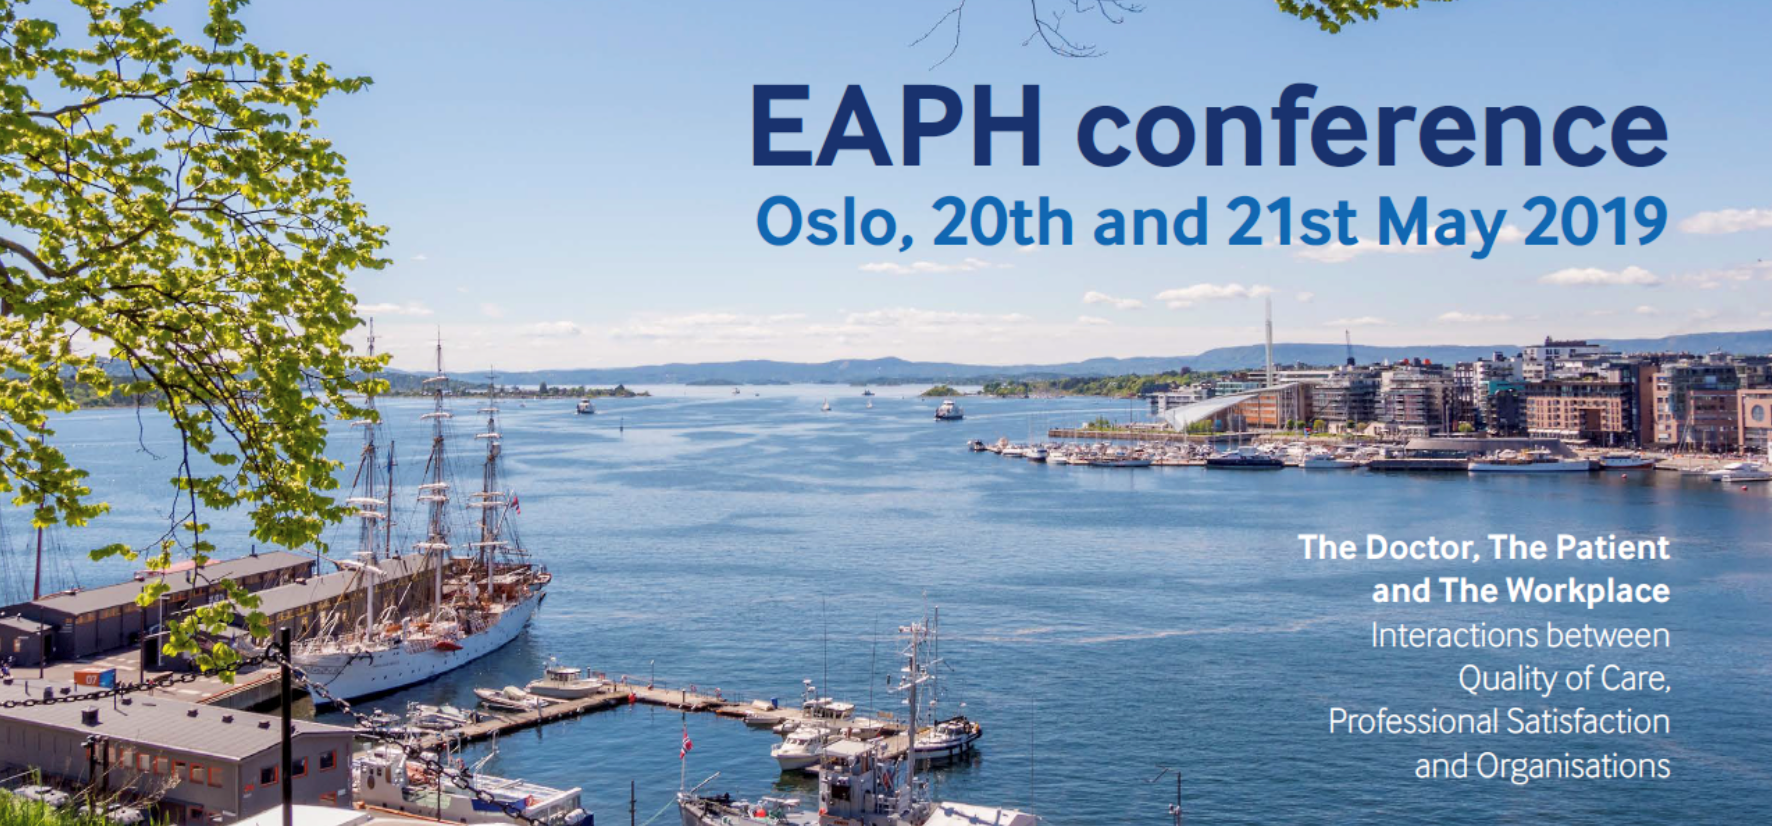 EAPH-konferanse